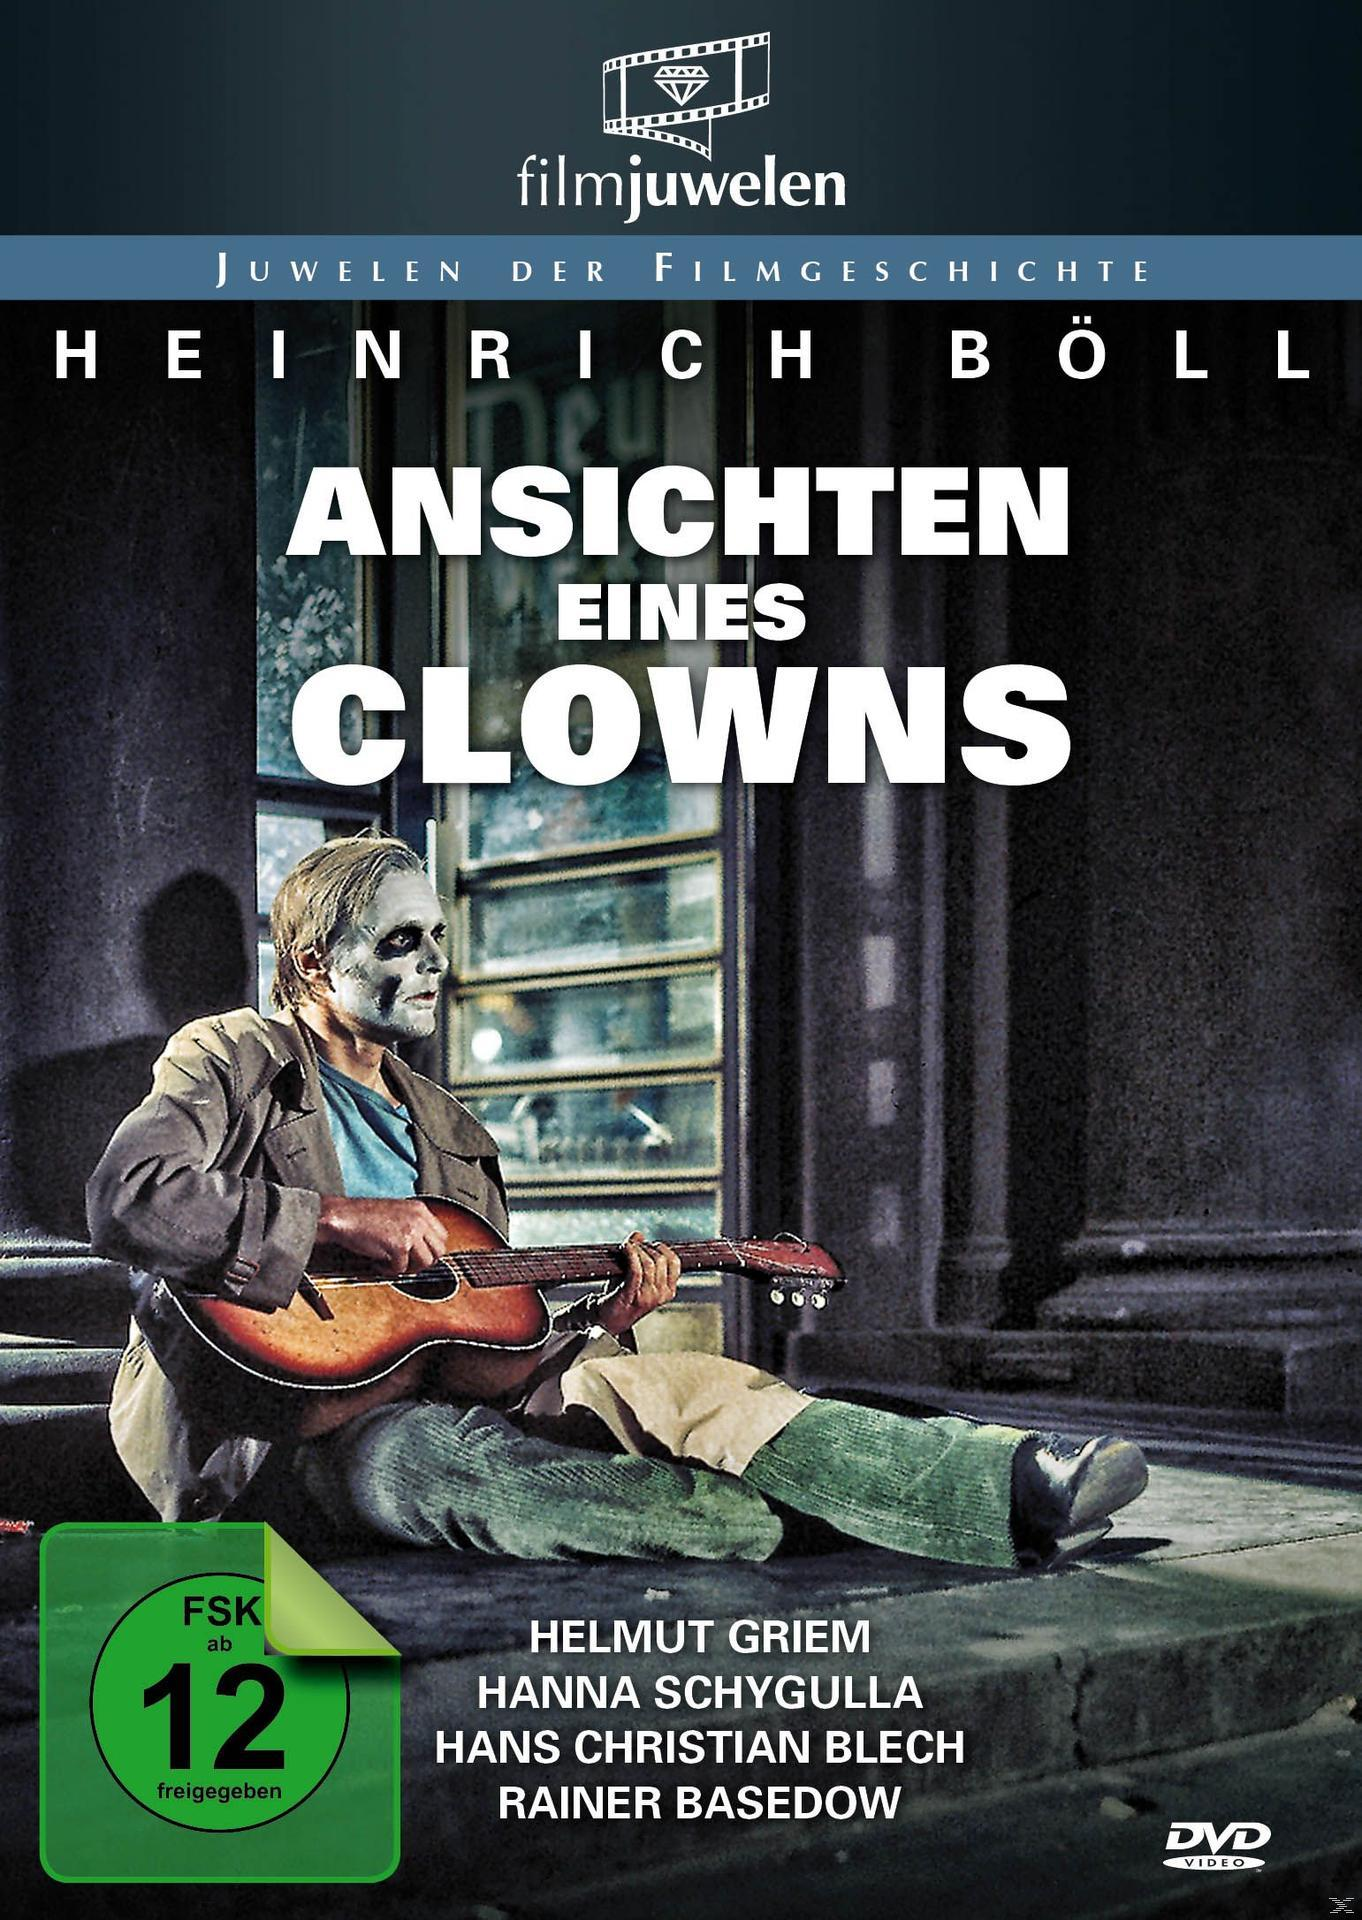 ANSICHTEN EINES CLOWNS BÖLL/FILMJUWELE DVD (HEINRICH